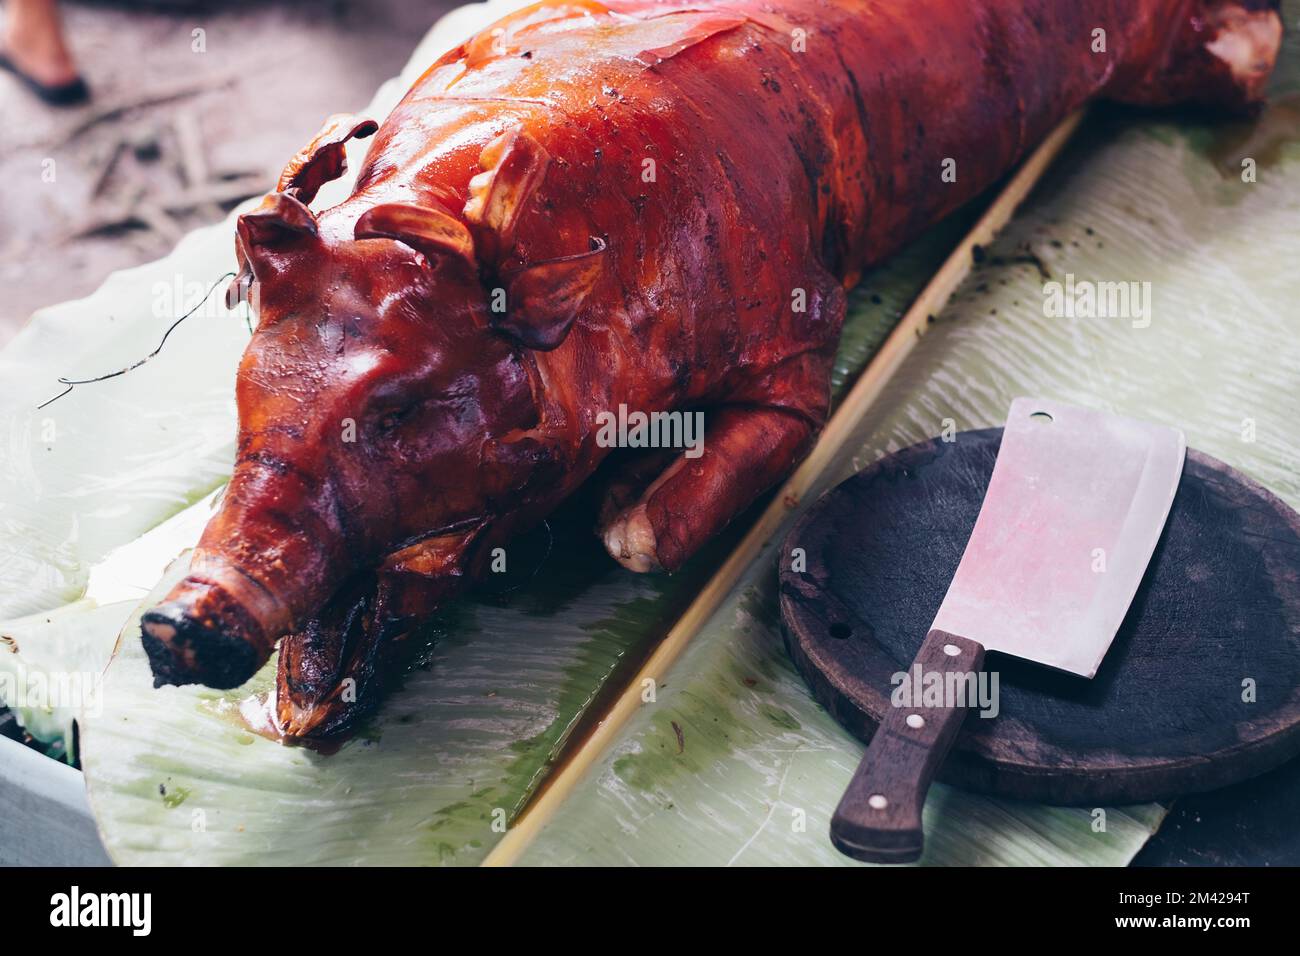 Photo à la tête du célèbre cochon entier croustillant et torréfié récemment, ou de Lechon Baboy sur une feuille de banane. Mise au point sélectionnée. Banque D'Images